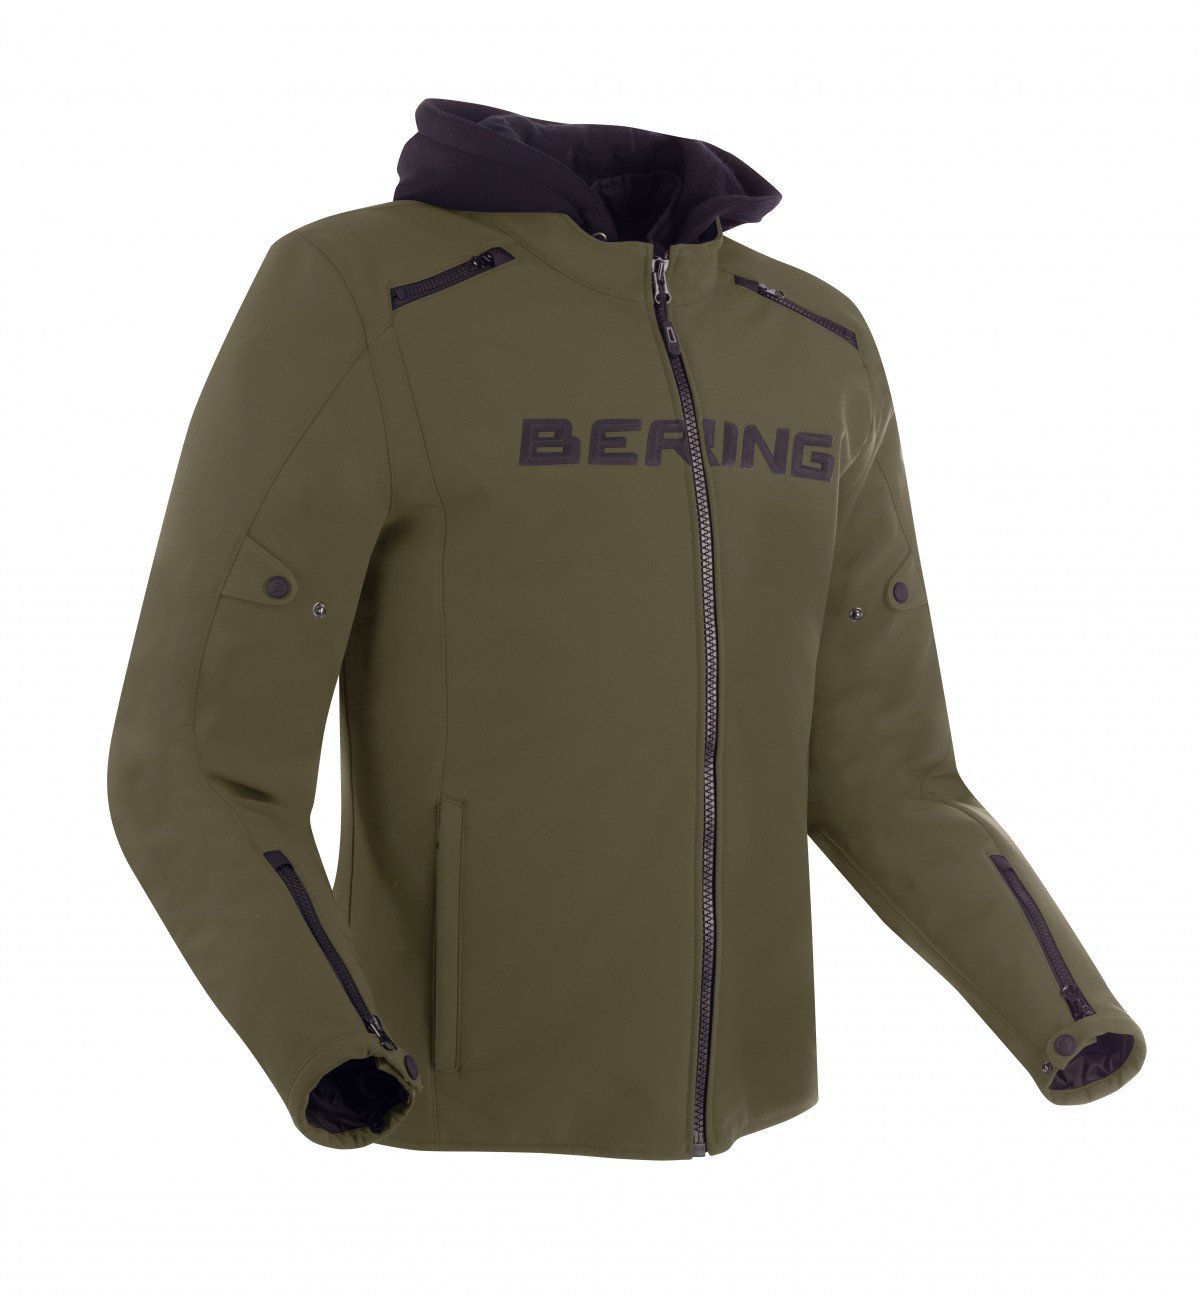 Image of Bering Elite Jacket Khaki Size L ID 3660815170304